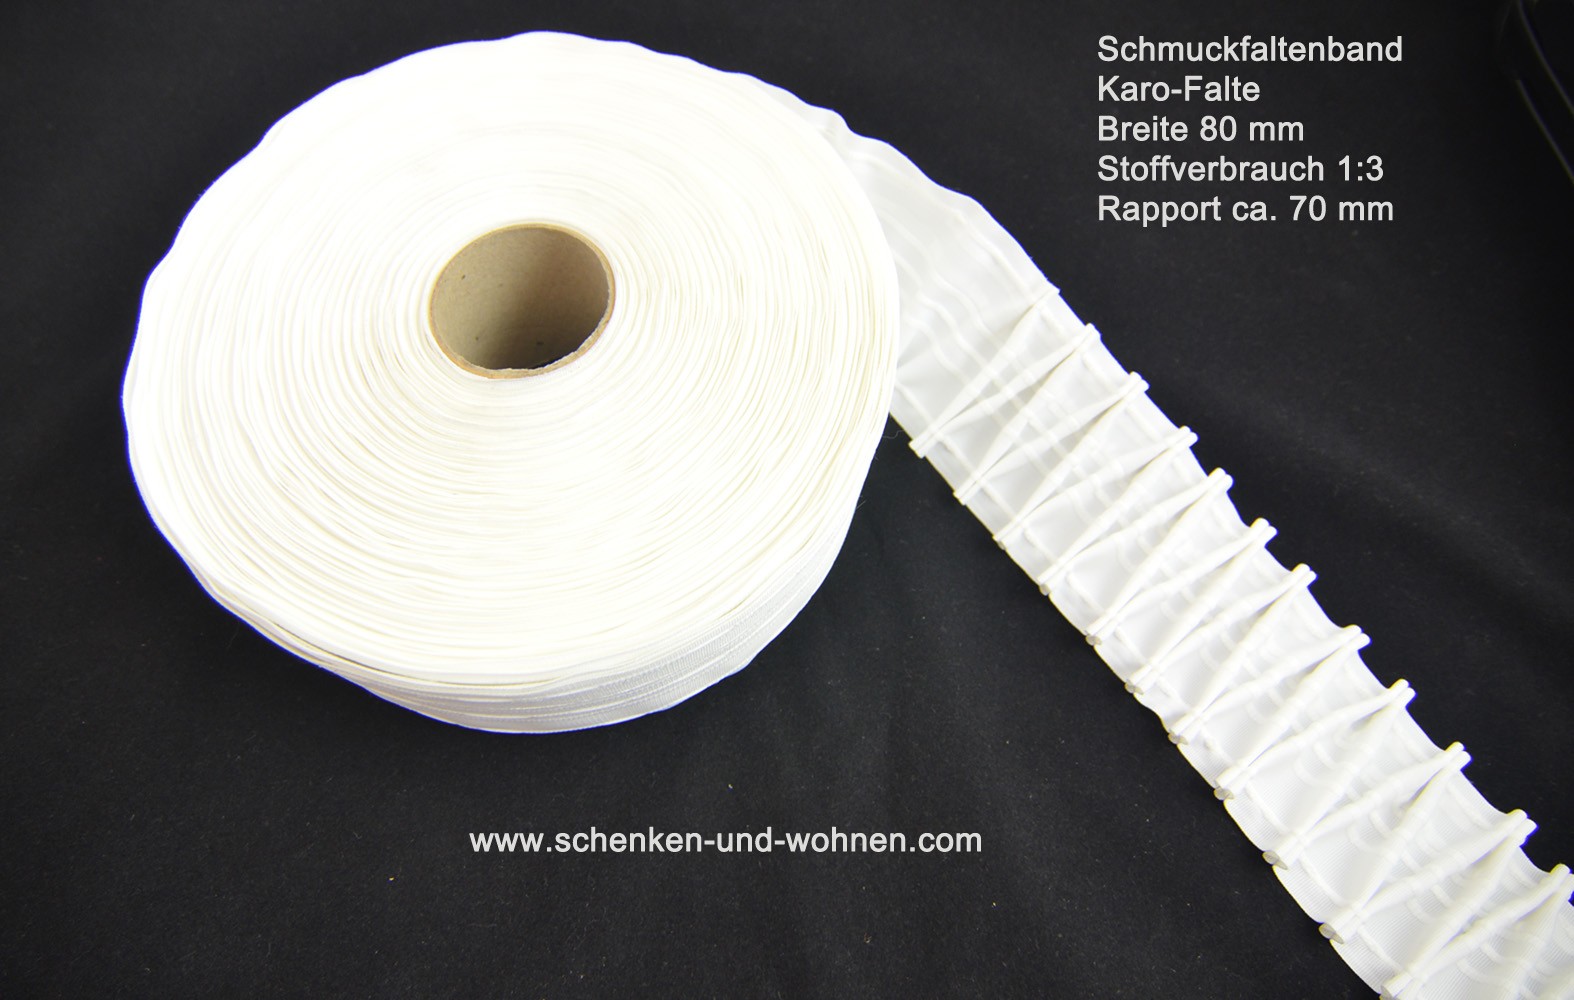 Schmuckfaltenband Karo-Falte 80 mm breit 1:3